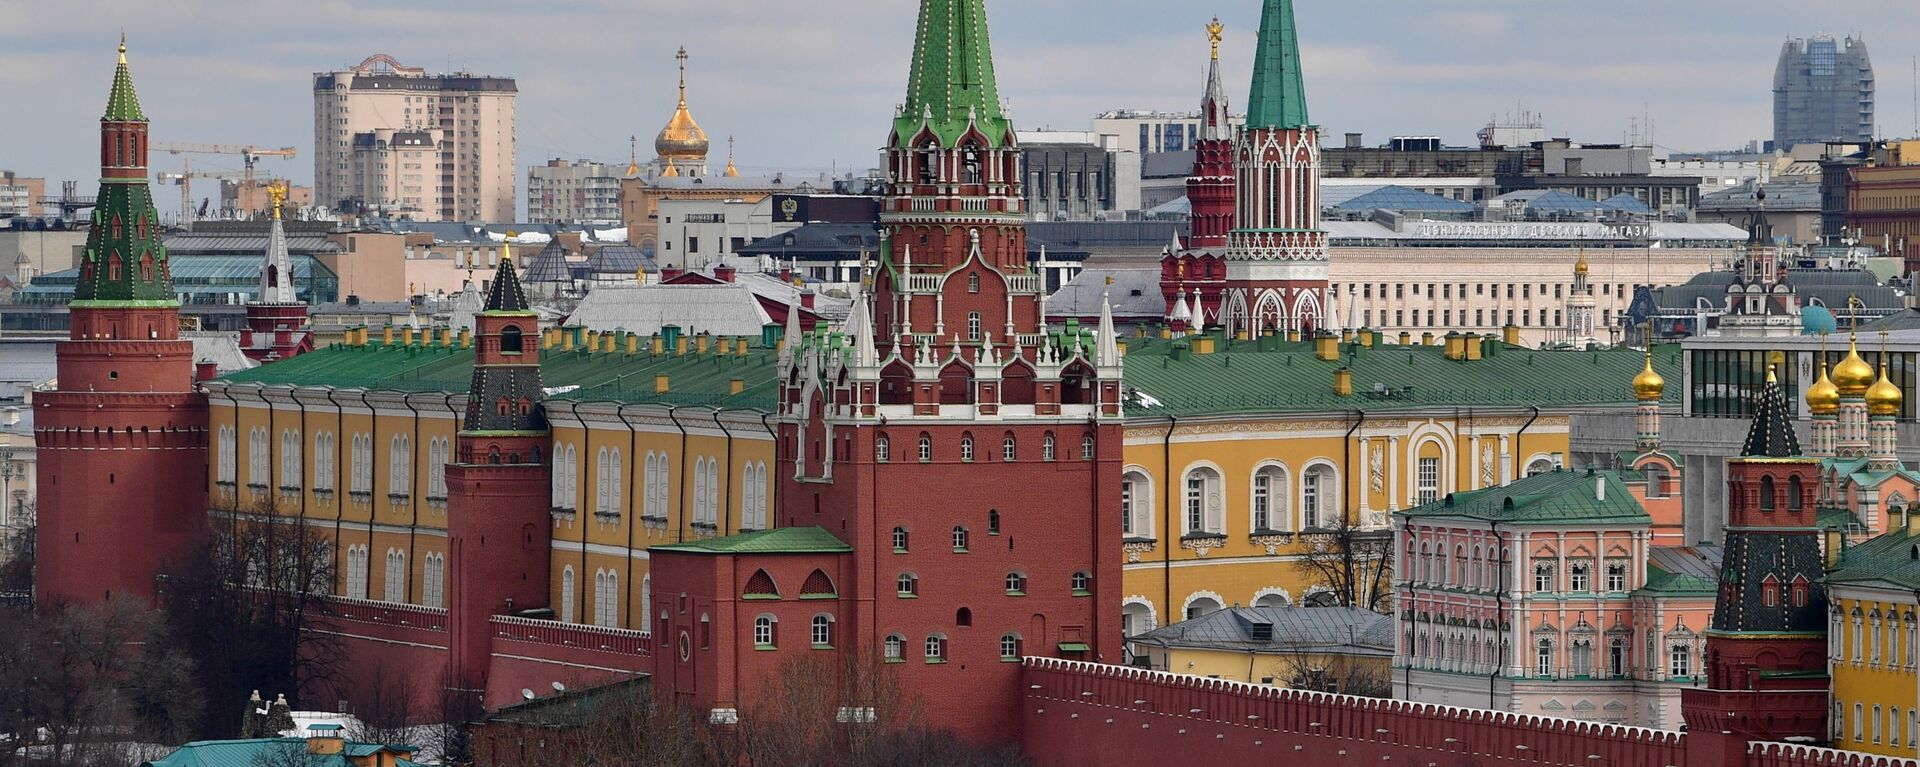 Quang cảnh các tòa tháp của Điện Kremlin ở Matxcơva. - Sputnik Việt Nam, 1920, 29.10.2021